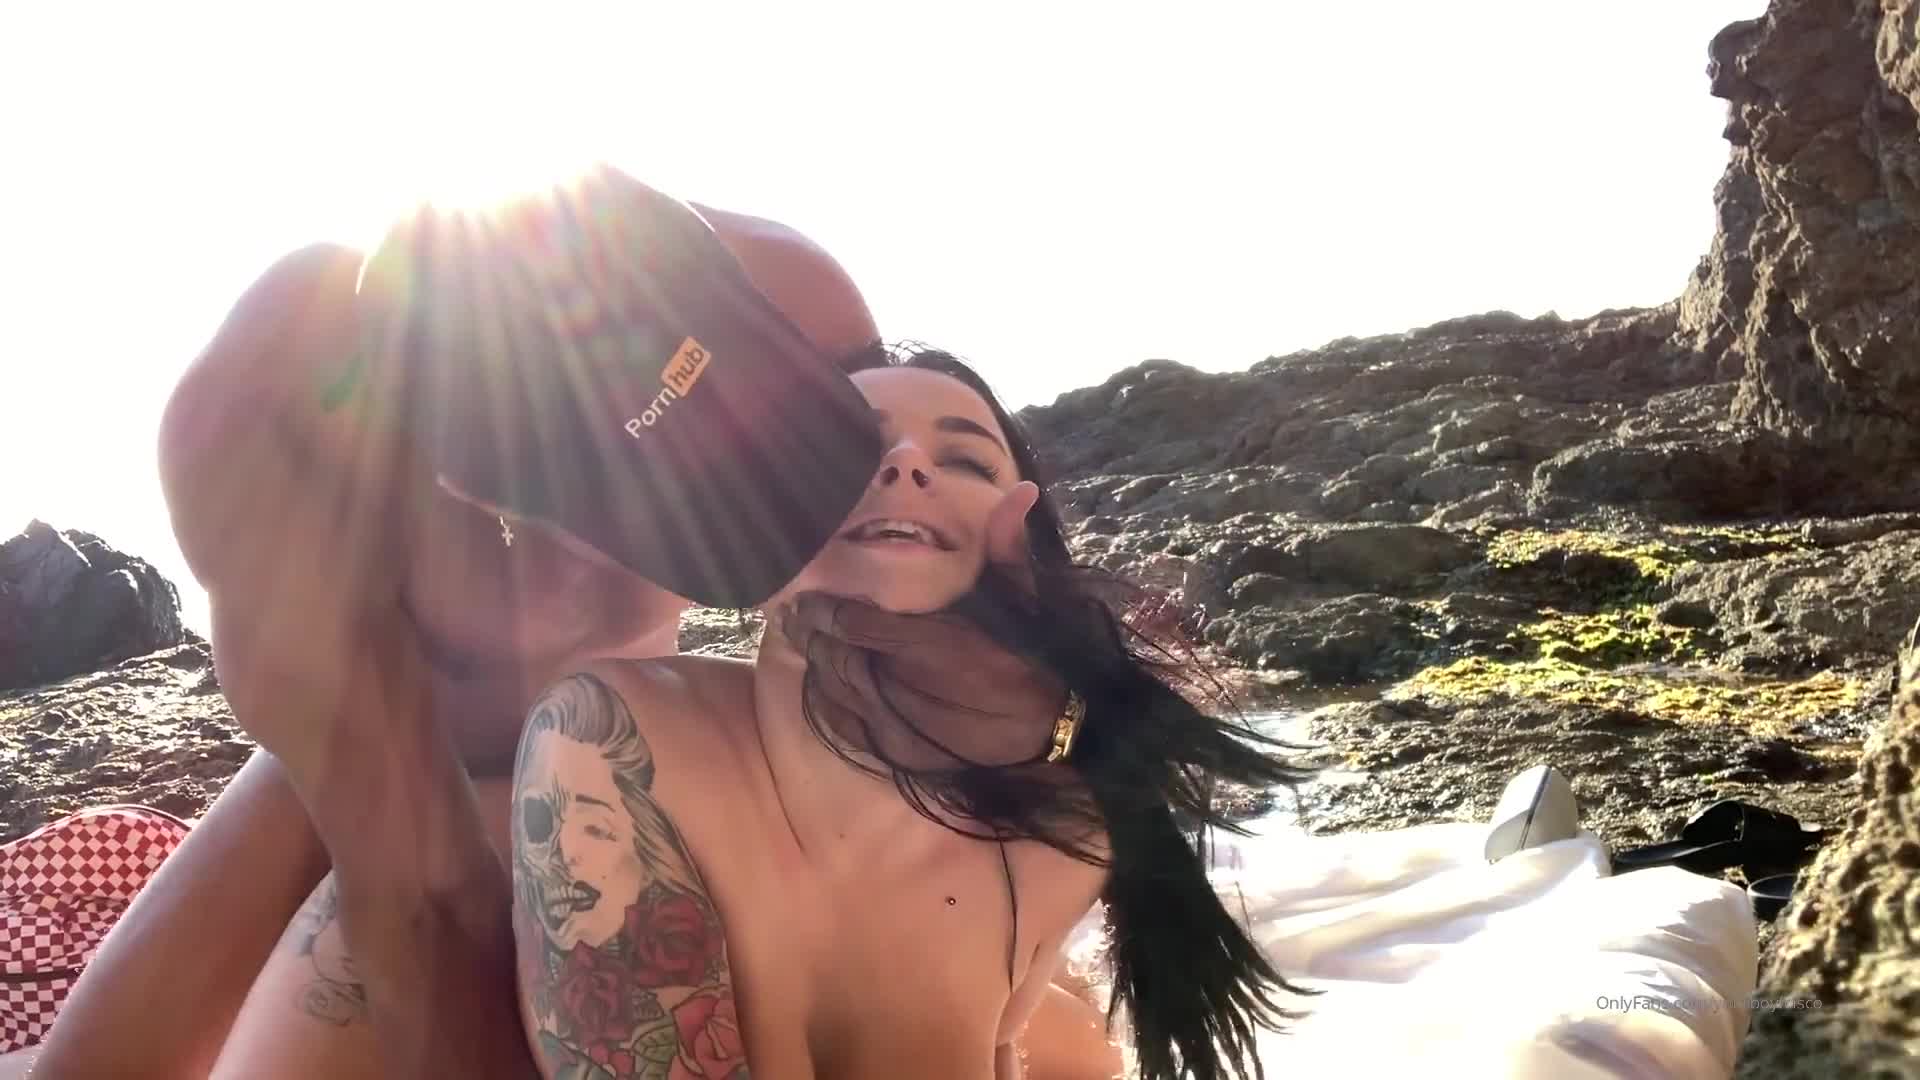 Grandi tette e culo grosso che lampeggiano in pubblico sulla spiaggia - SpankBang porno - Videos